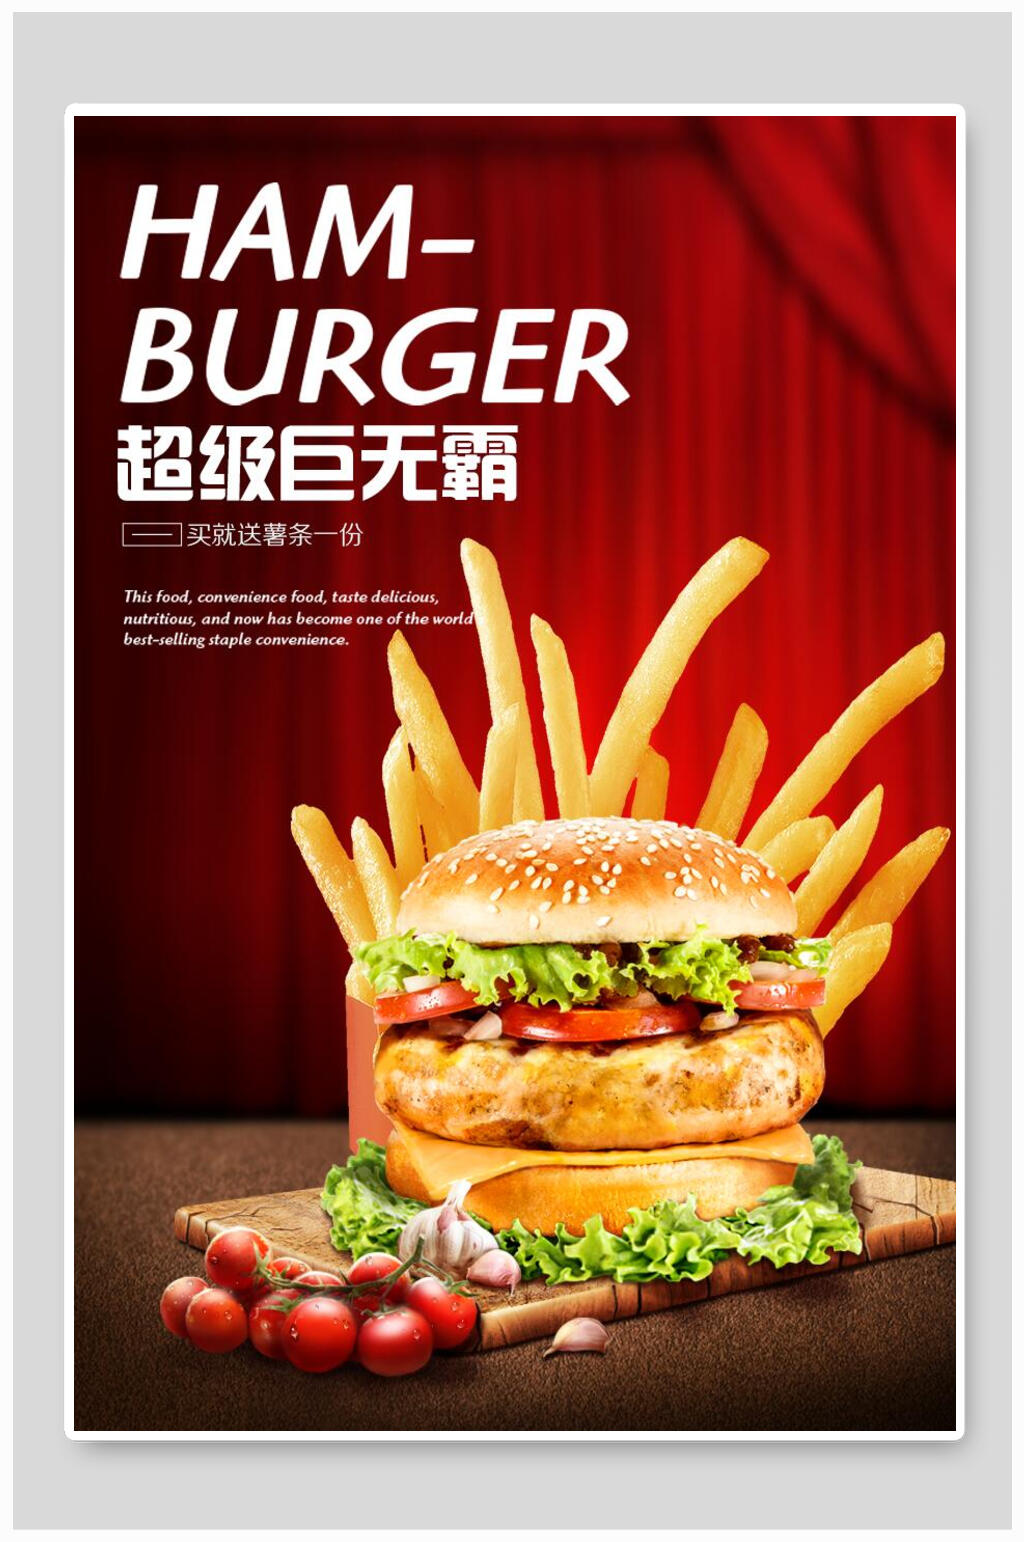 汉堡薯条海报素材免费下载,本作品是由小红1210上传的原创平面广告